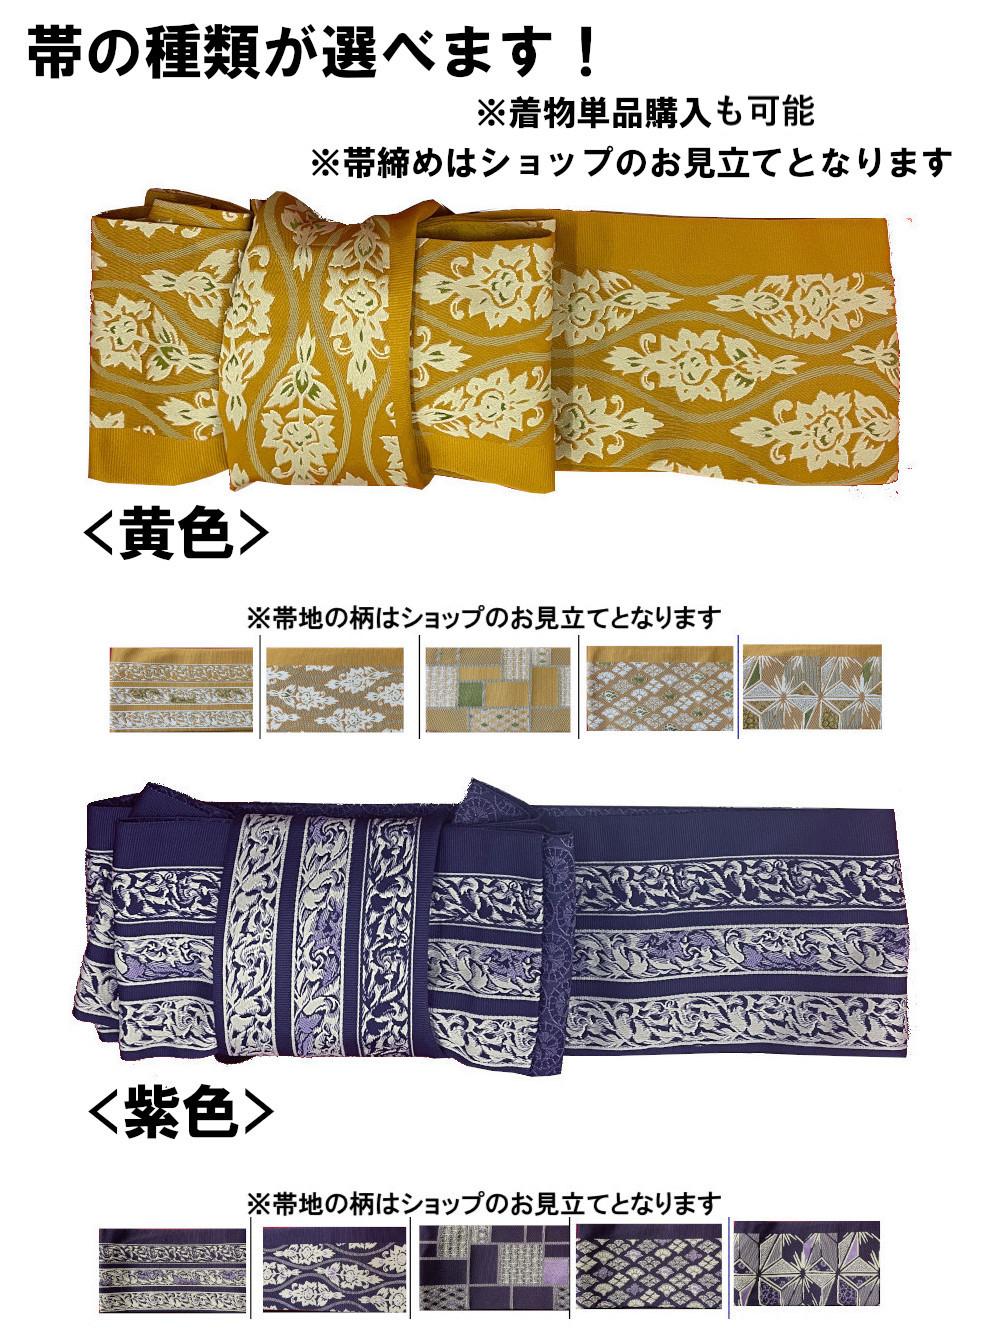 衿なし着物(リボン帯付き) [流水 紫] ※着物単品 ¥12,650画像